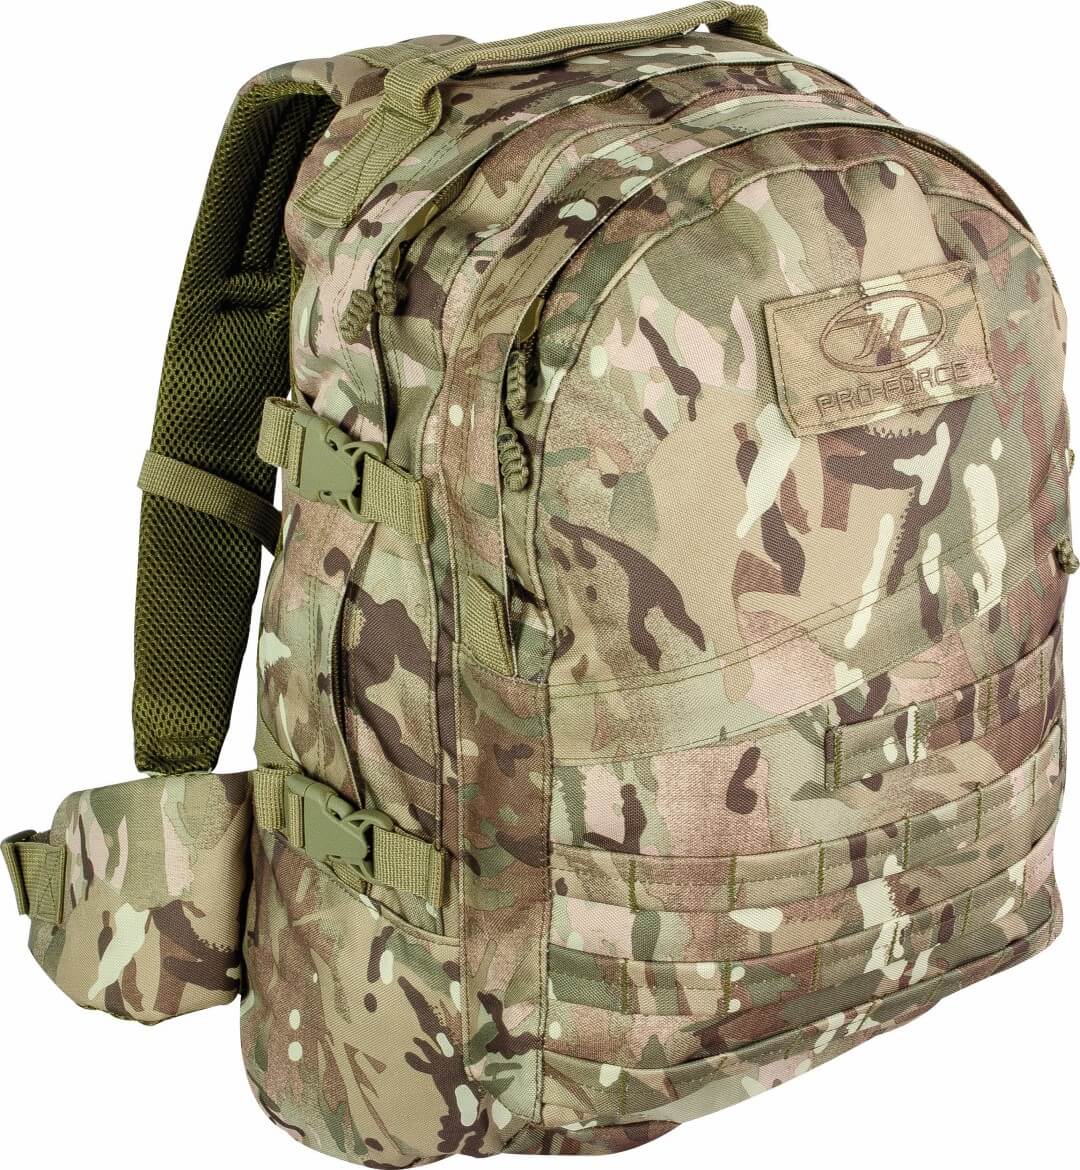 Highlander – Rugzakken – HMTC camouflage – 49 x 30 x 1 cm